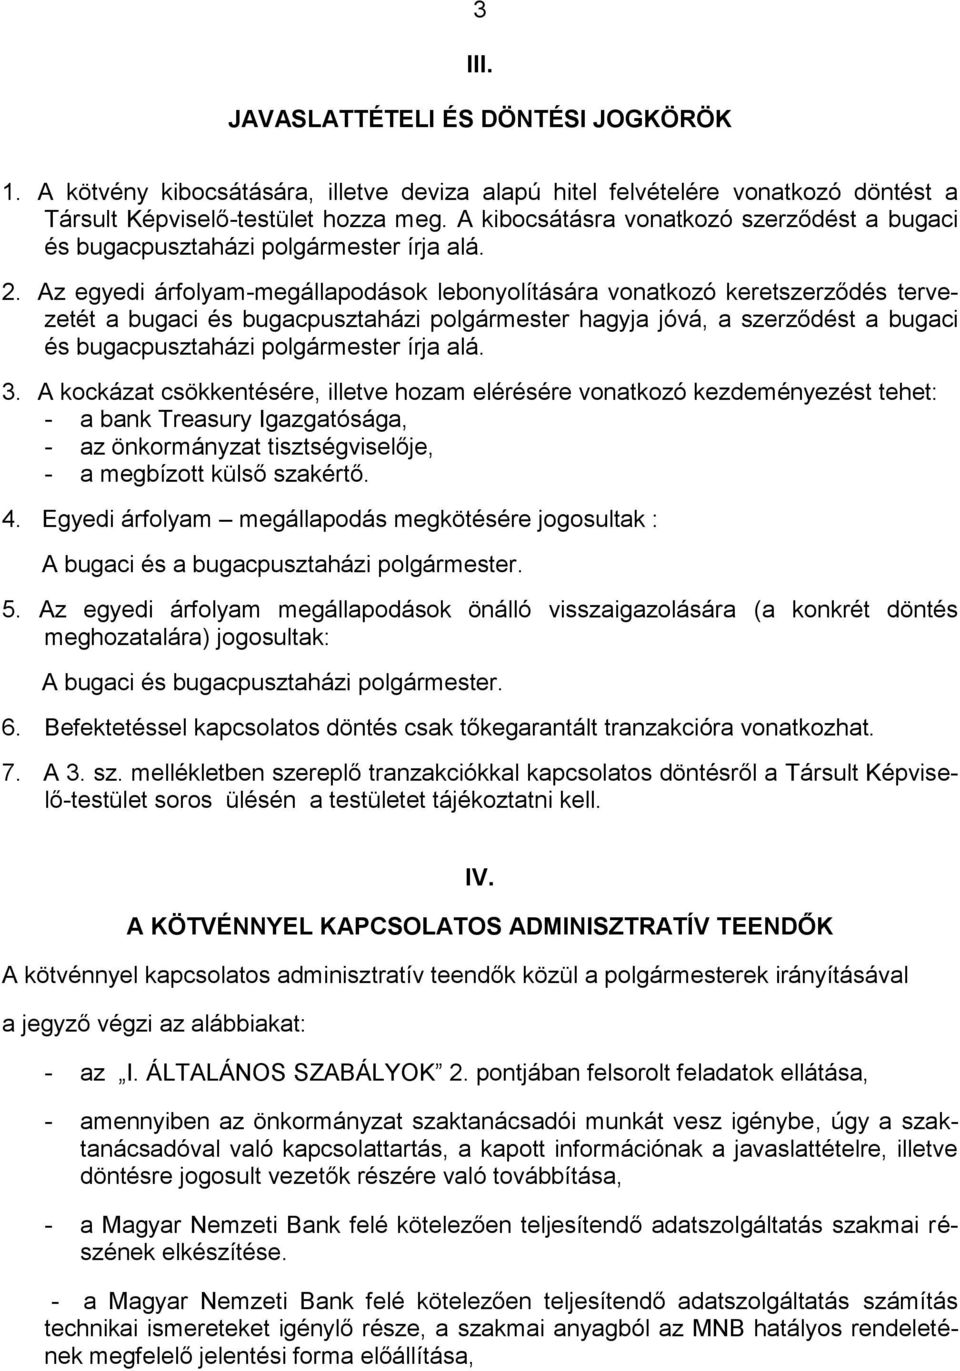 Az egyedi árfolyam-megállapodások lebonyolítására vonatkozó keretszerződés tervezetét a bugaci és bugacpusztaházi polgármester hagyja jóvá, a szerződést a bugaci és bugacpusztaházi polgármester írja